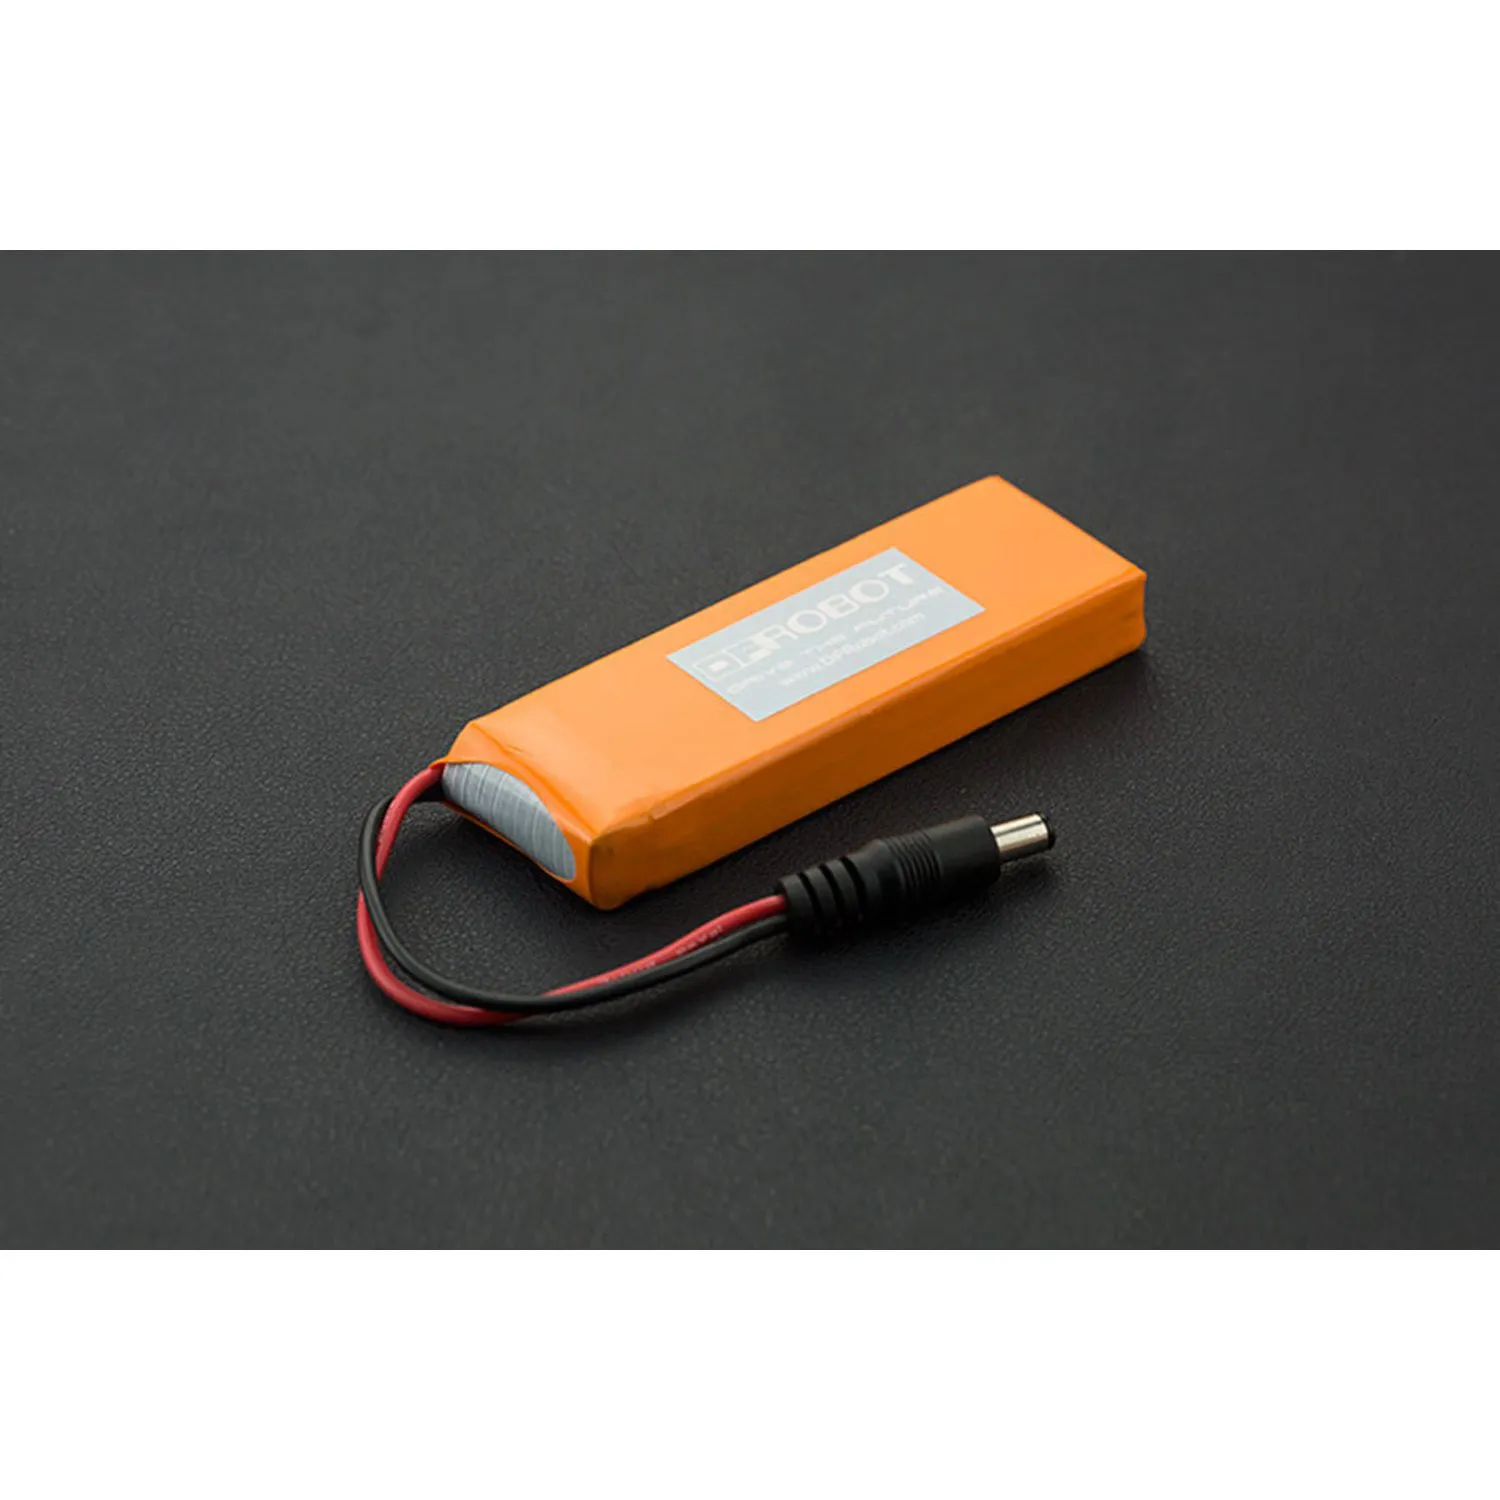 Photo of 7.4V Lipo 2500mAh Battery (Arduino Power Jack)